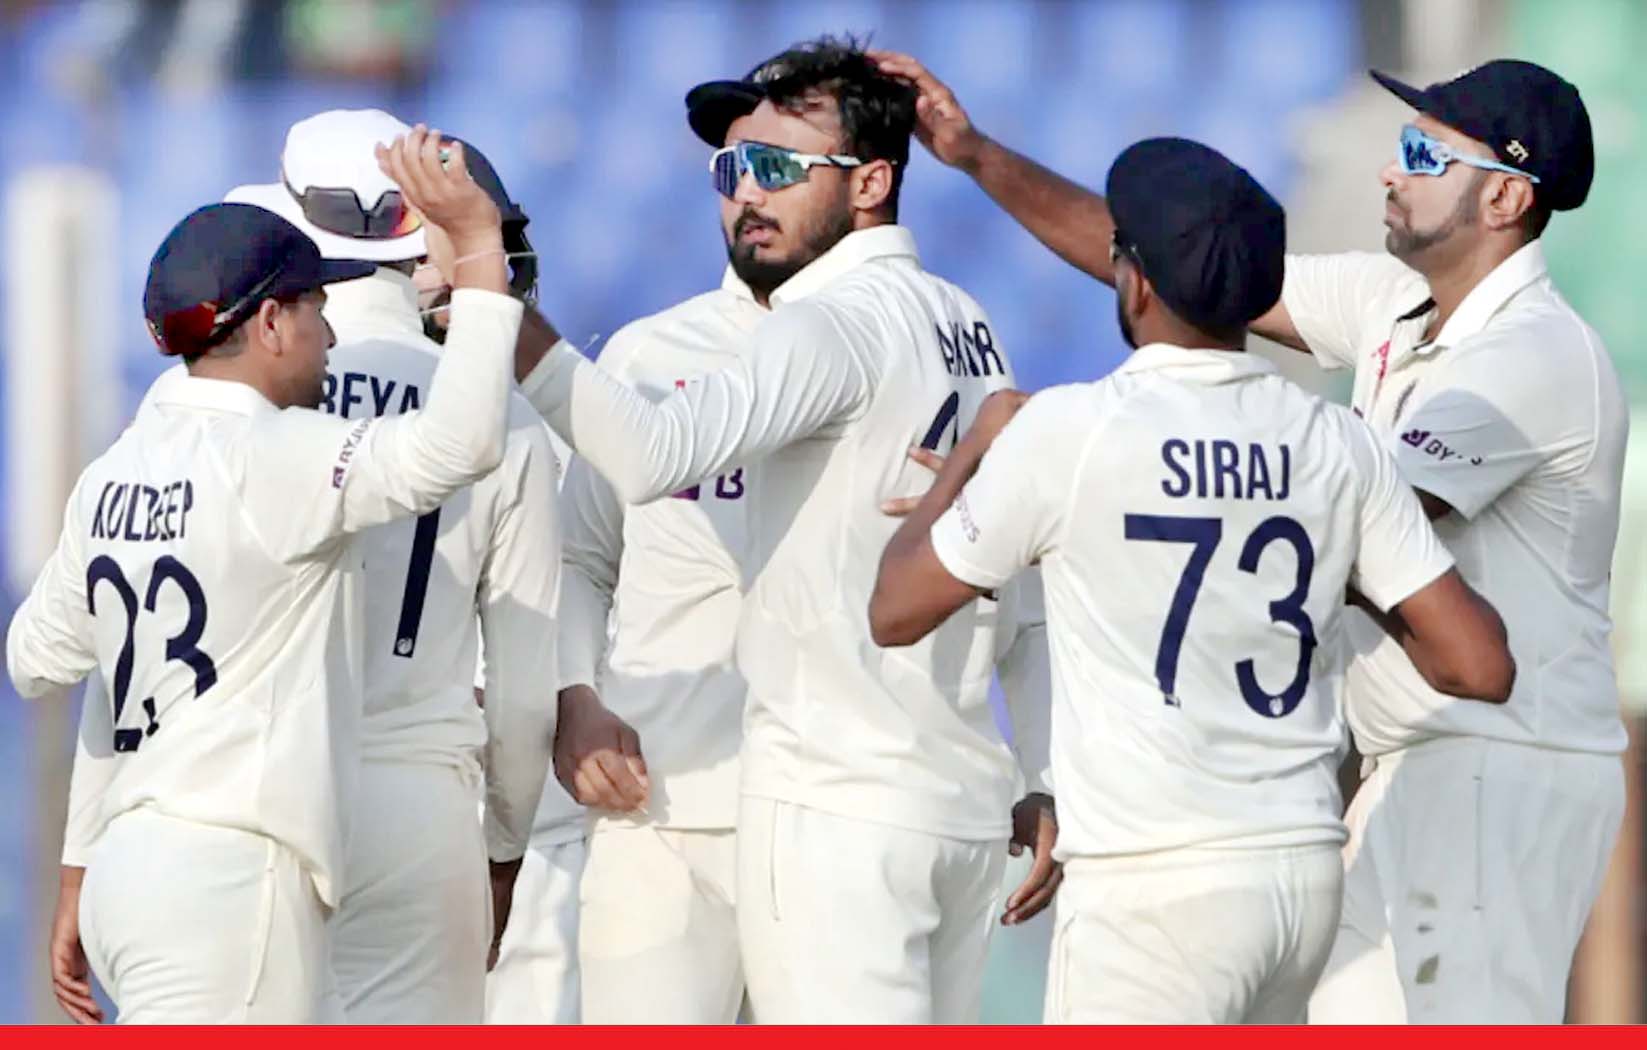 भारत ने चटगांव टेस्ट मैच 188 रन से जीता, सीरीज में बनाई 1-0 की बढ़त